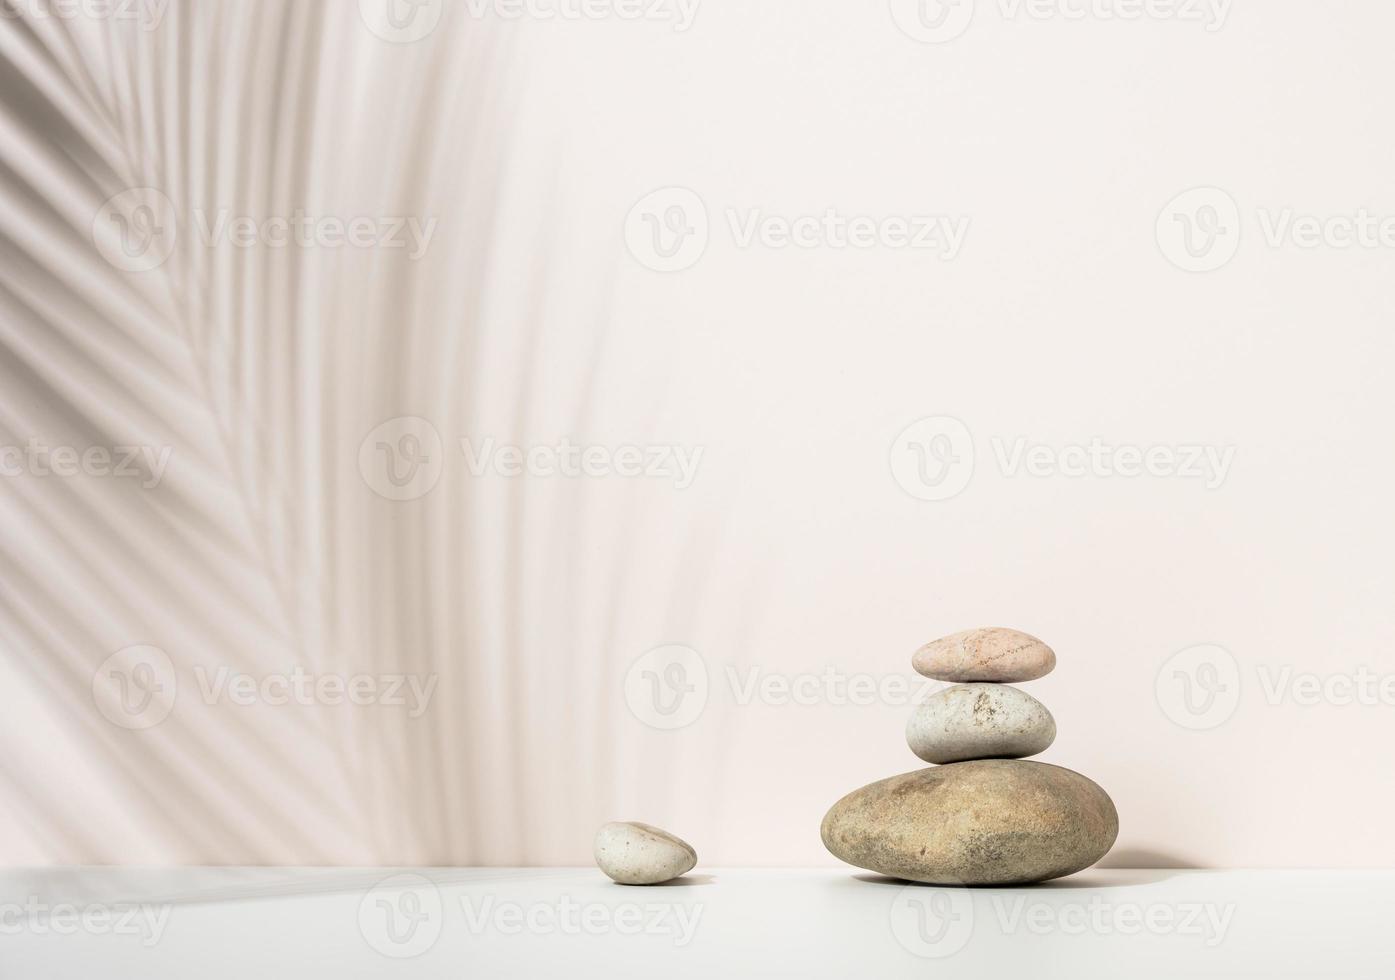 pile de pierres rondes et et l'ombre d'une feuille de palmier sur fond beige. scène de démonstration de produits cosmétiques, publicité photo